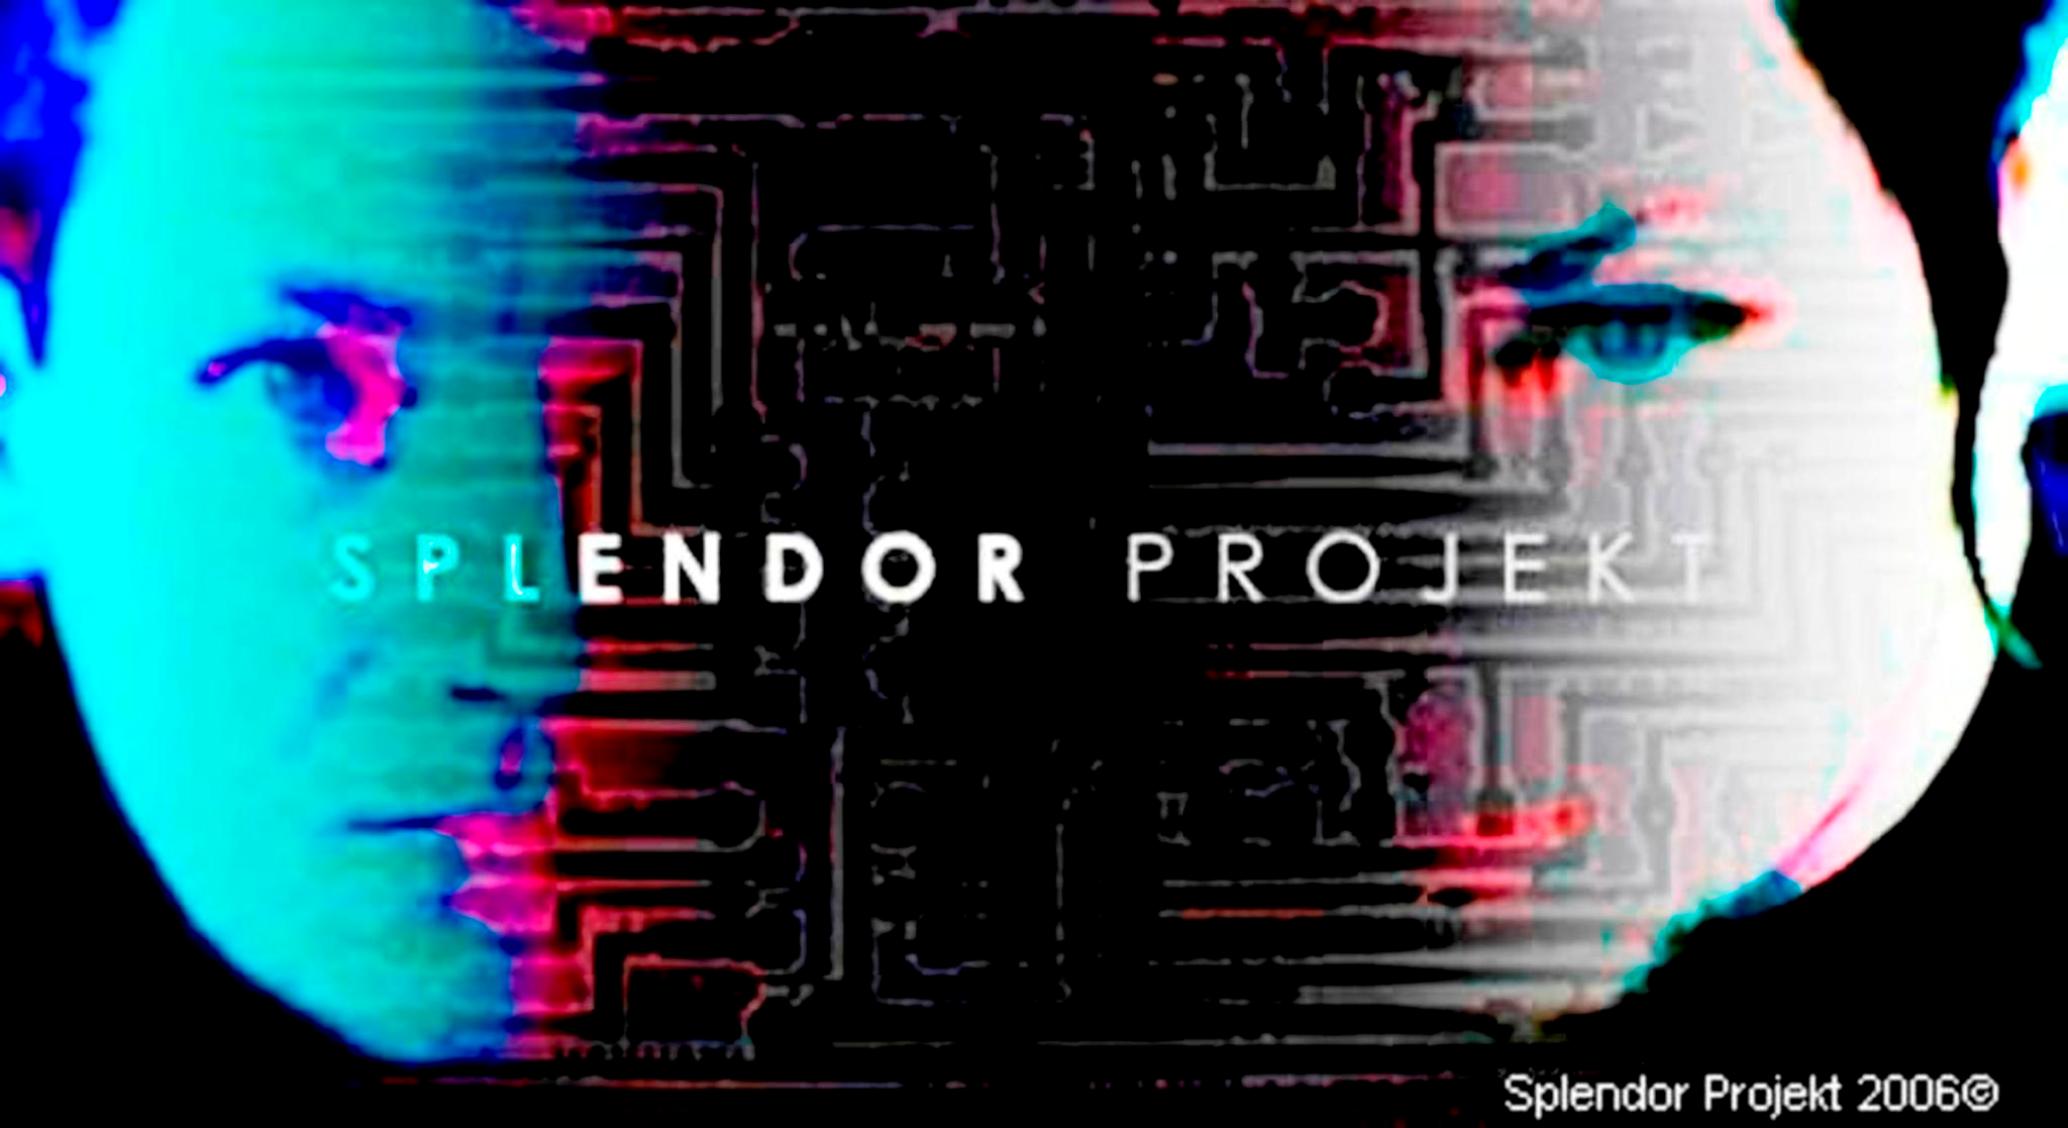 http://indiemusicpeople.com/uploads2/Splendor_Projekt_-_splendorwear_banner.jpg